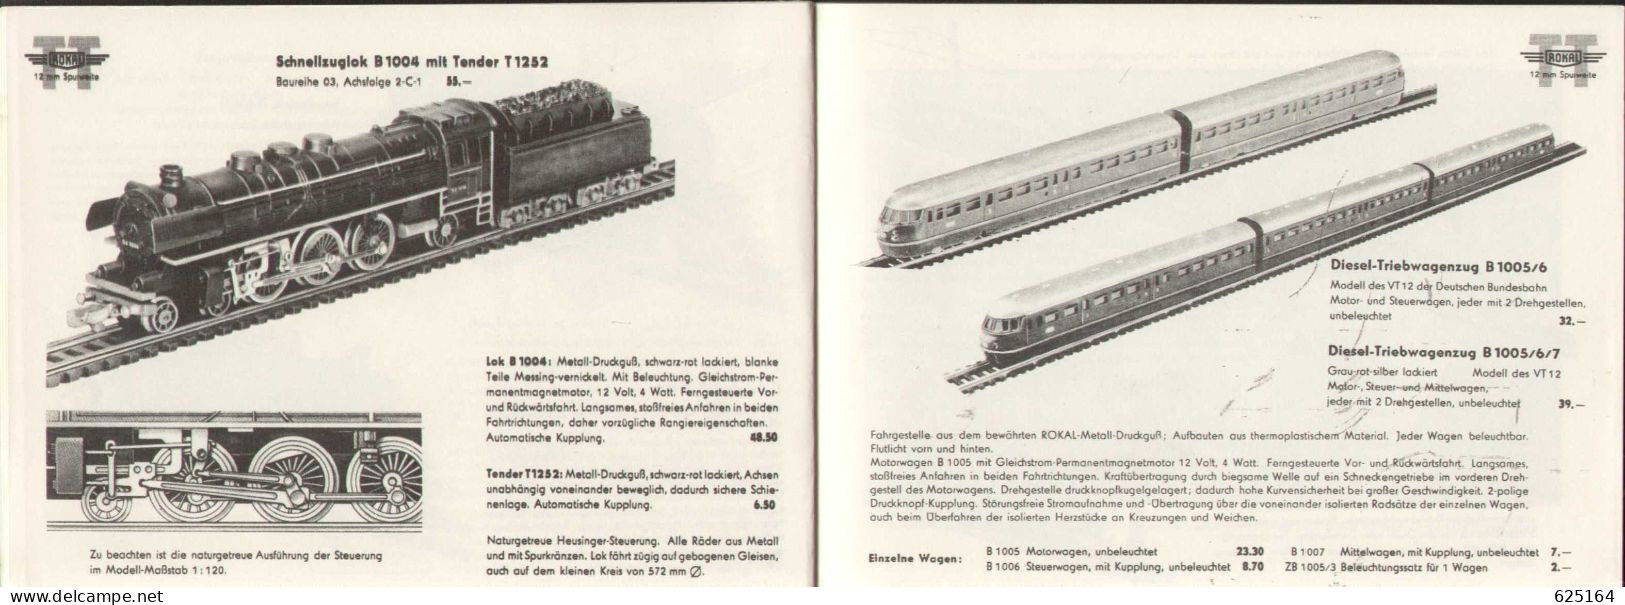 Catalogue ROKAL 1957/3 Modellbahn Katalog TT 1:120 12 Mm. - Deutsch